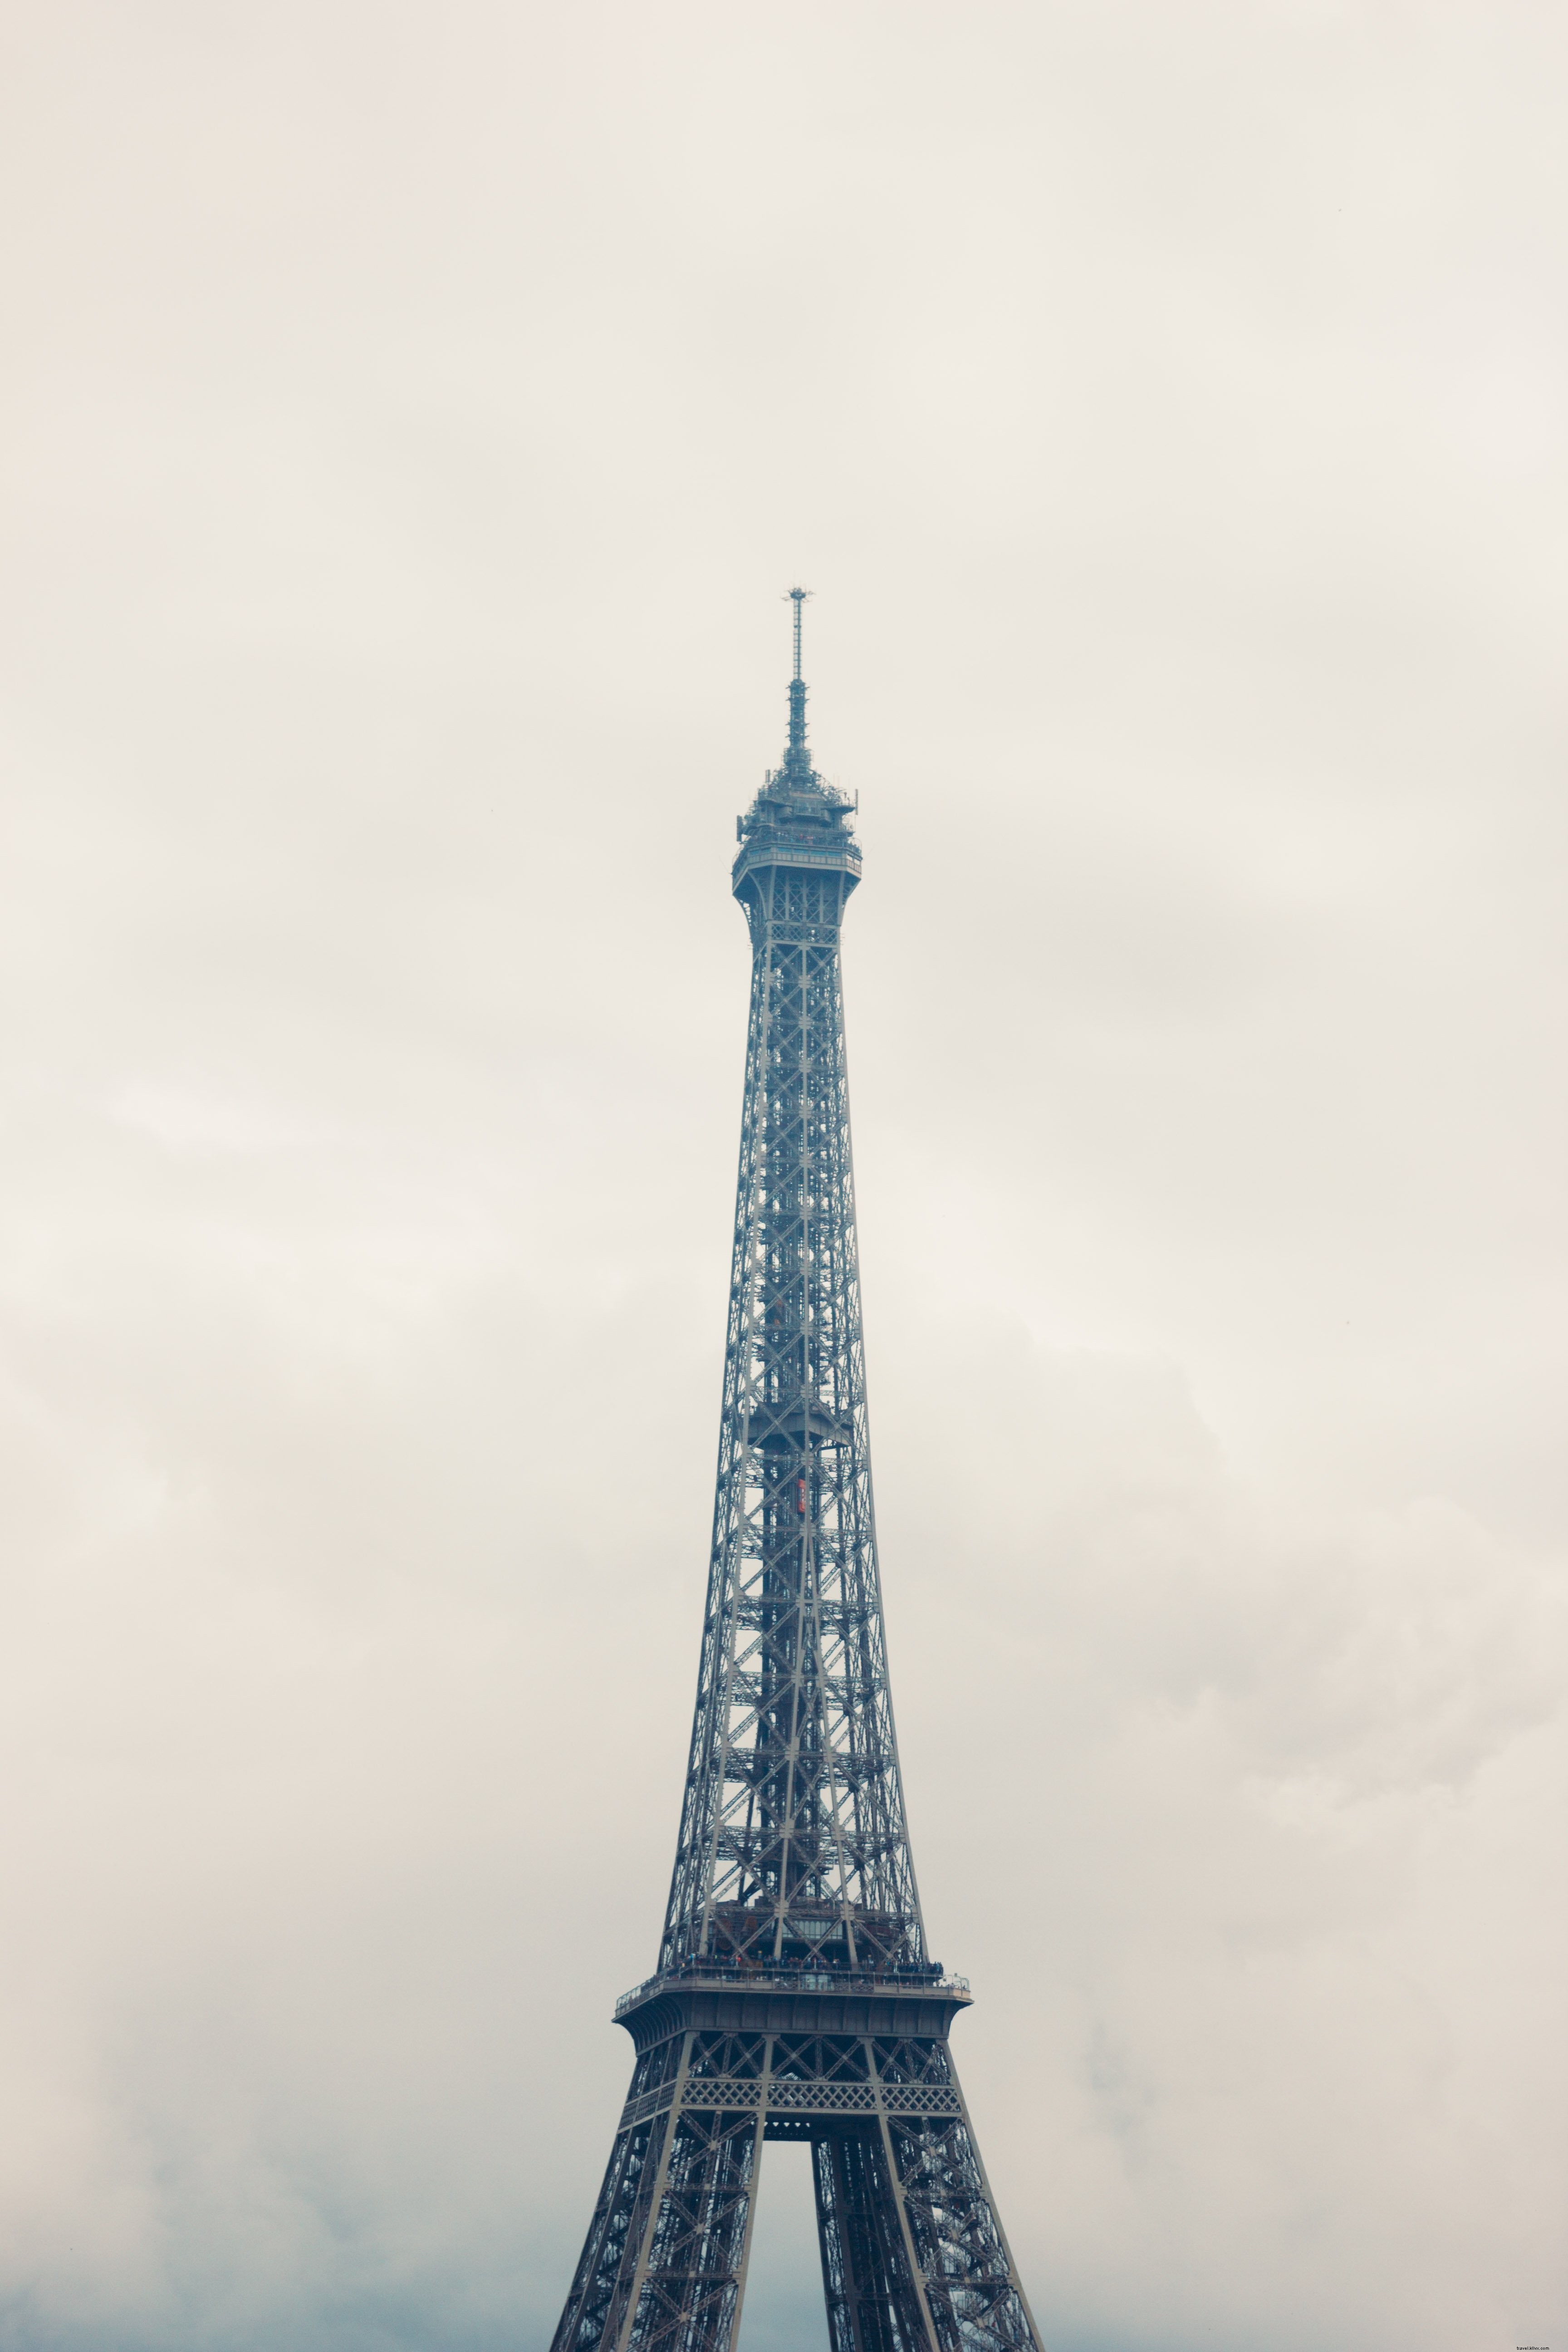 Foto de la Torre Eiffel de París